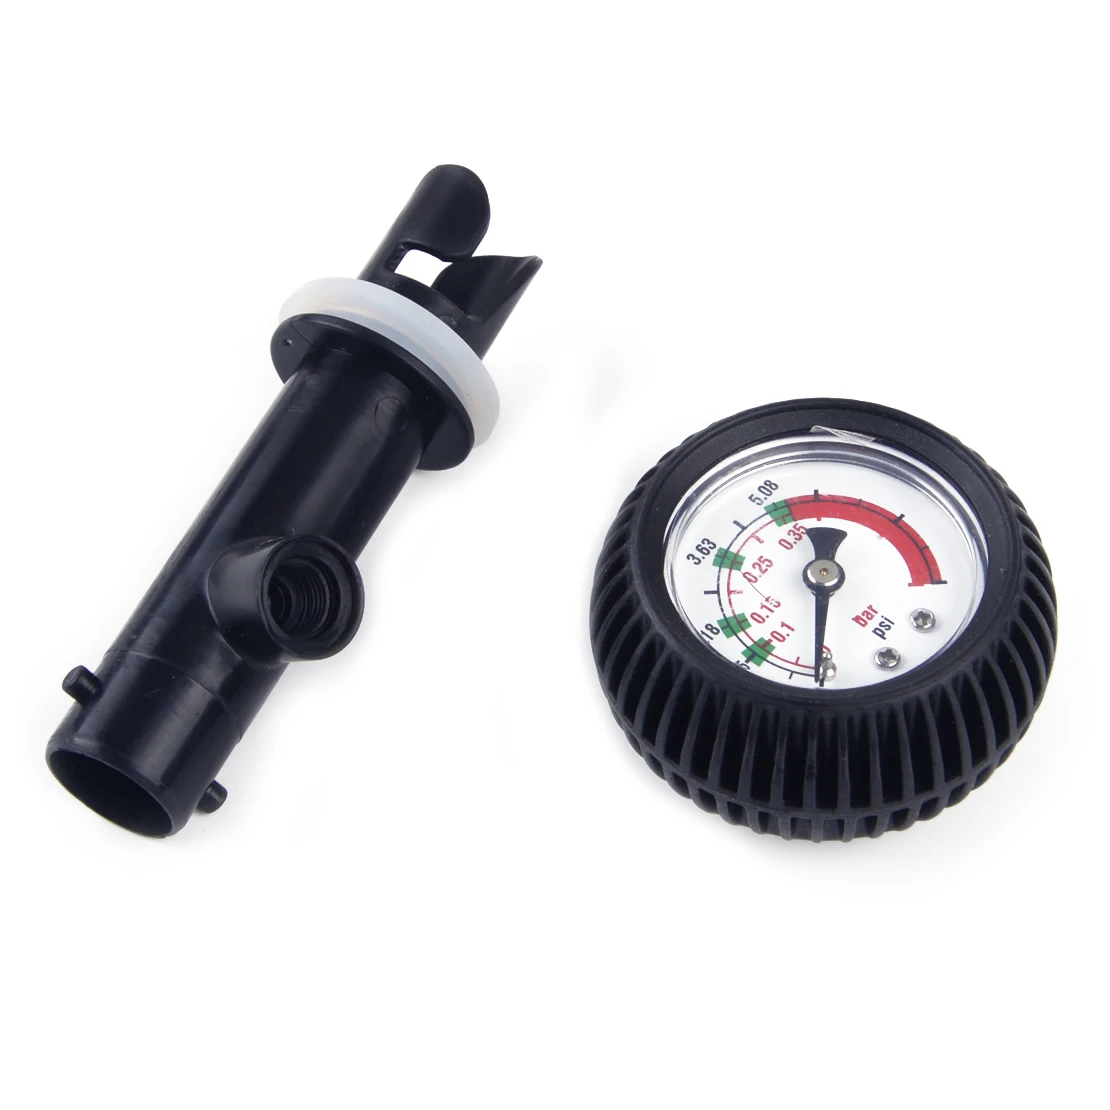 Beler черный ПВХ & железо & Медь воздушный термометр датчик давления клапан разъем для надувной каяк плот лодка серфинг